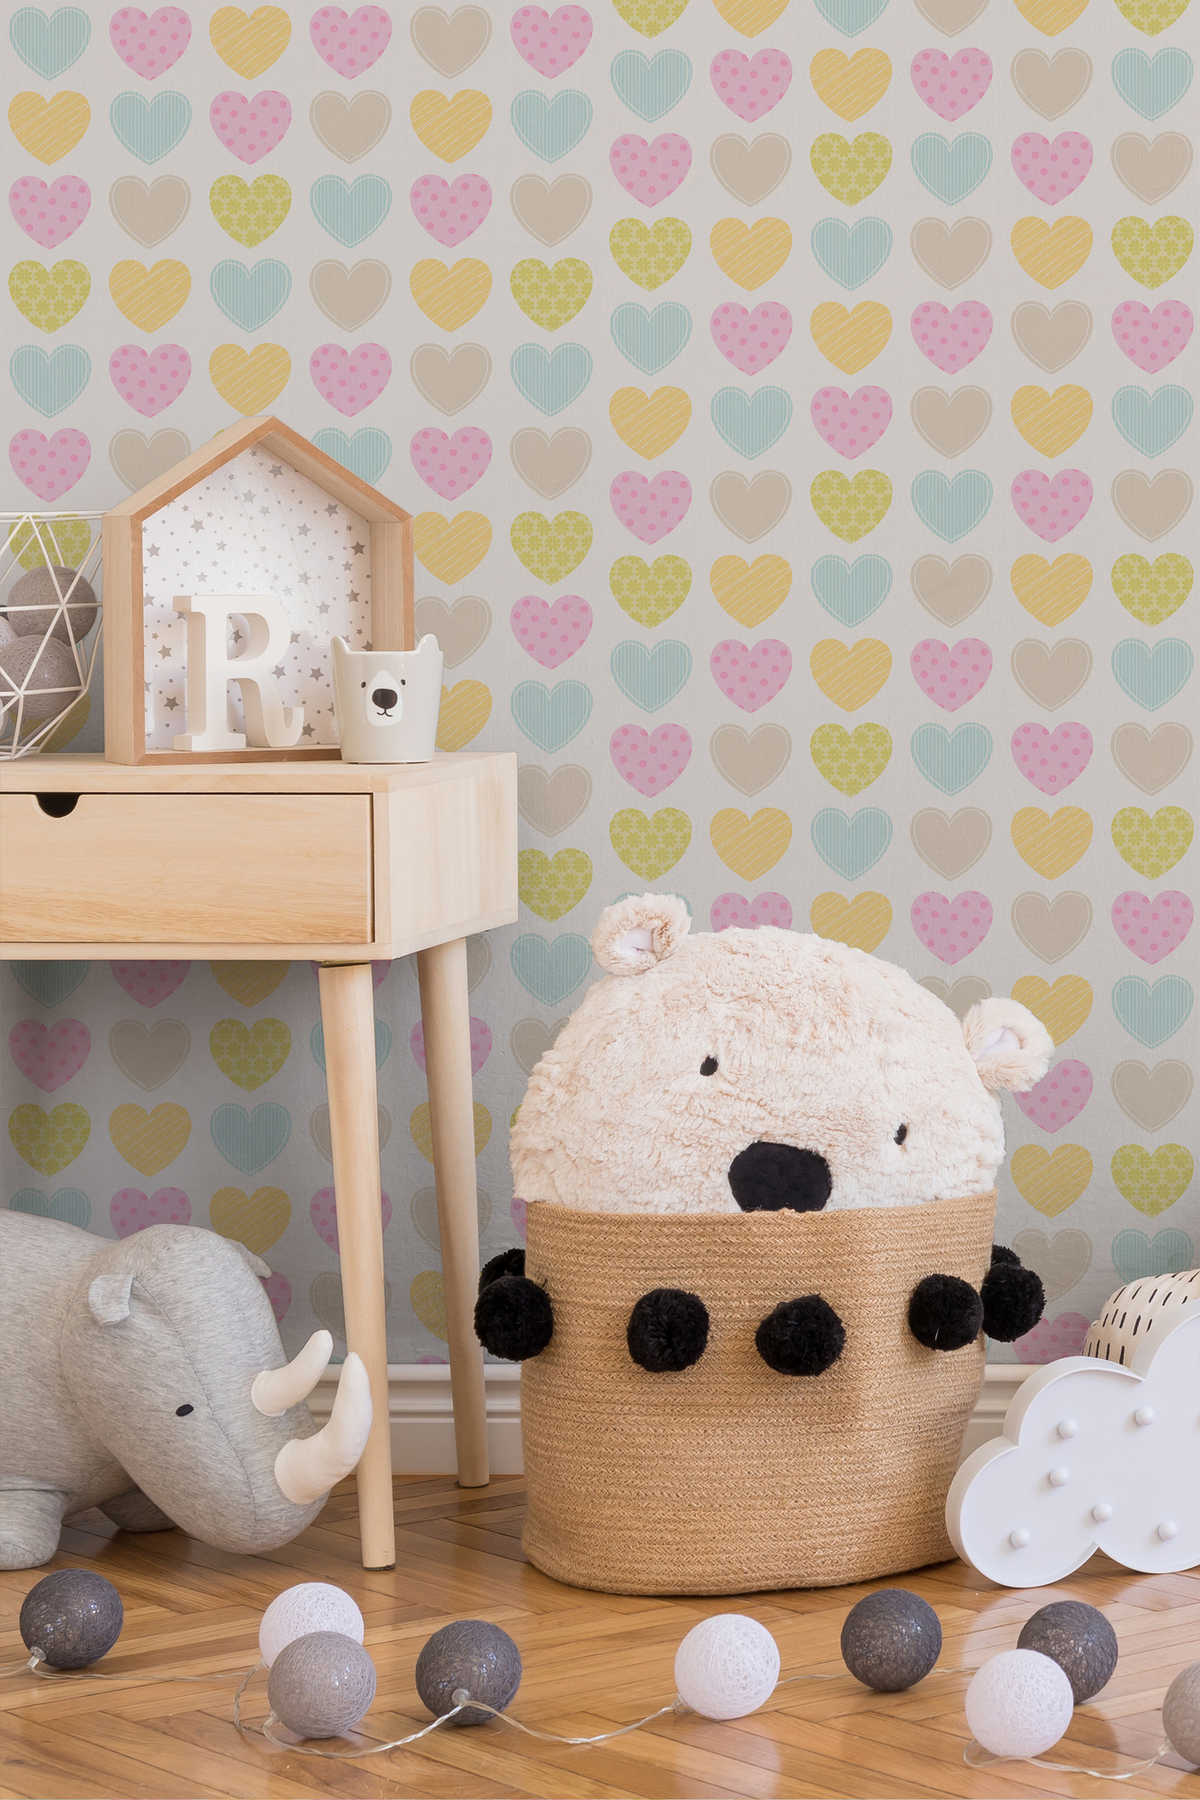             Pastell-Tapete mit Herzen für Kinderzimmer – Bunt, Weiß
        